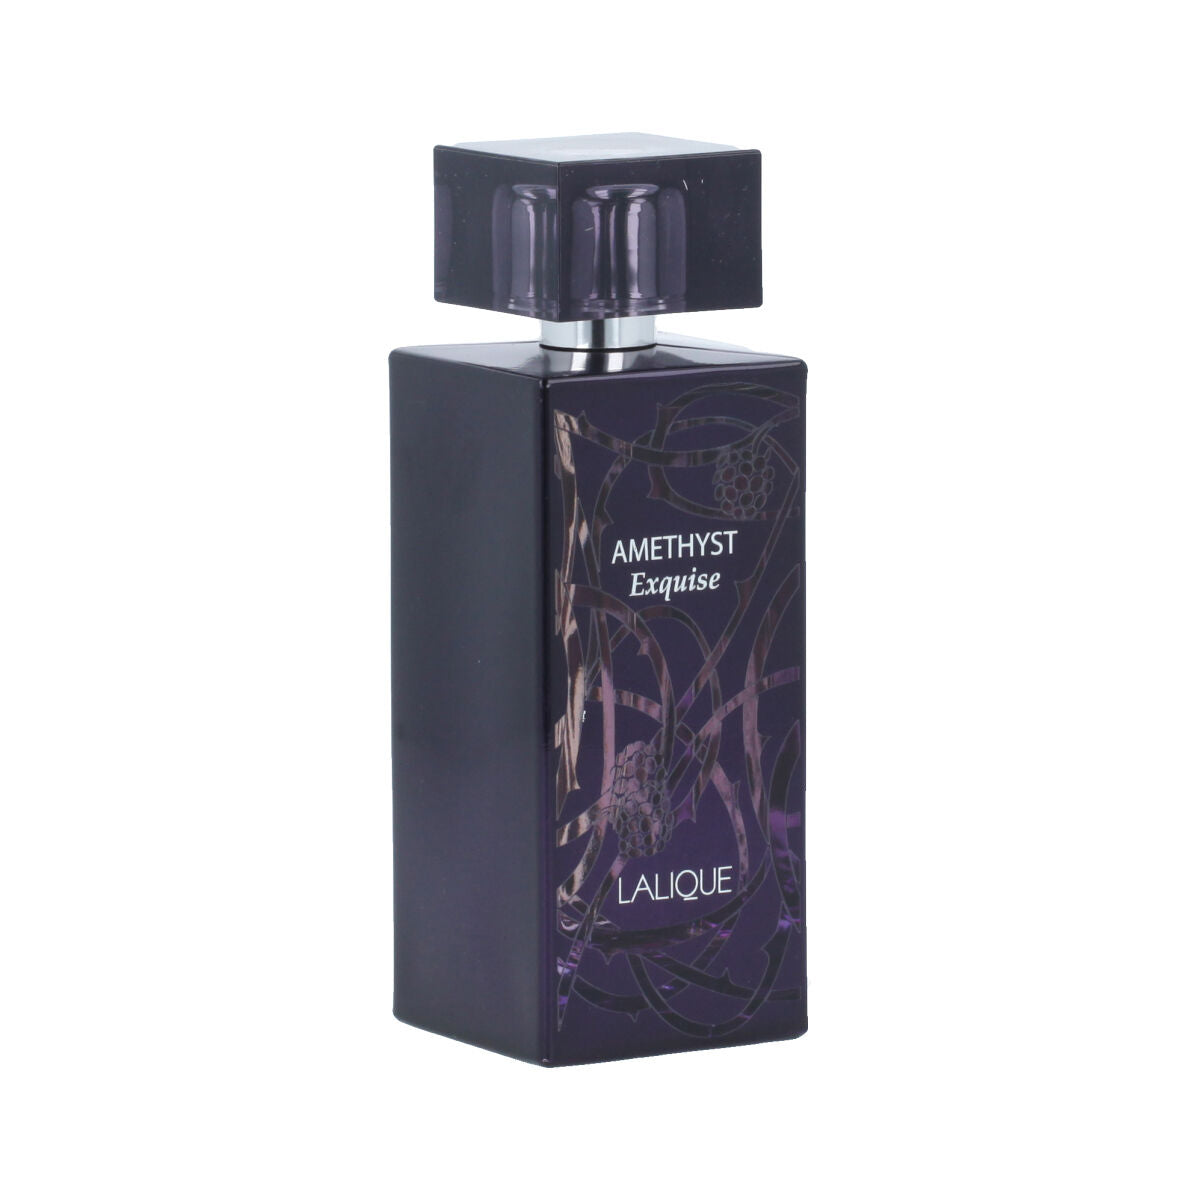 Ženski parfem lalique edp ametist exquise 100 ml